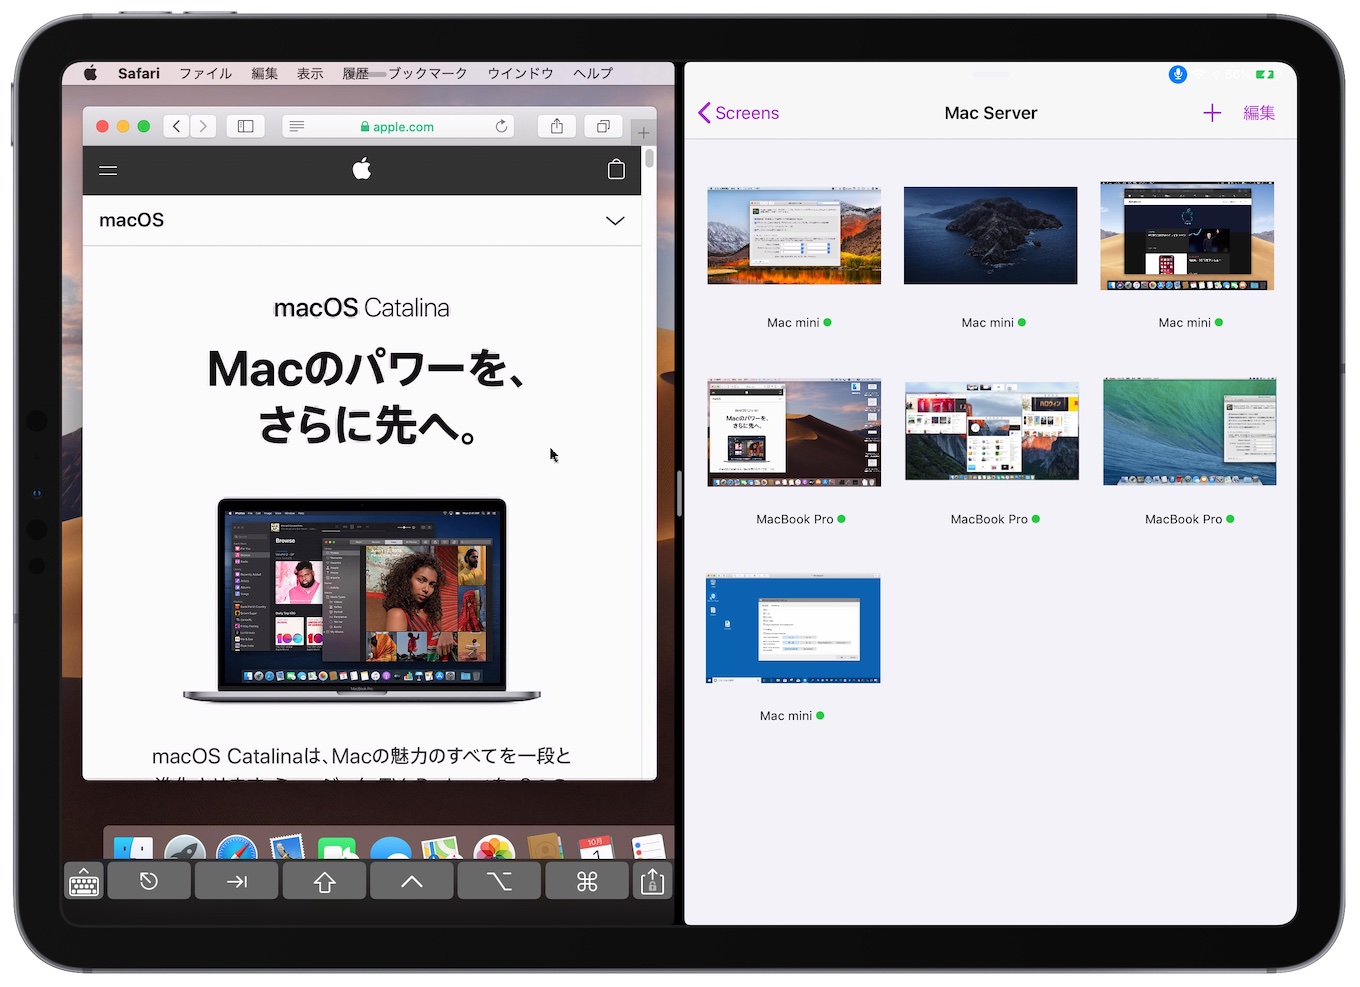 Screens for iPadOS